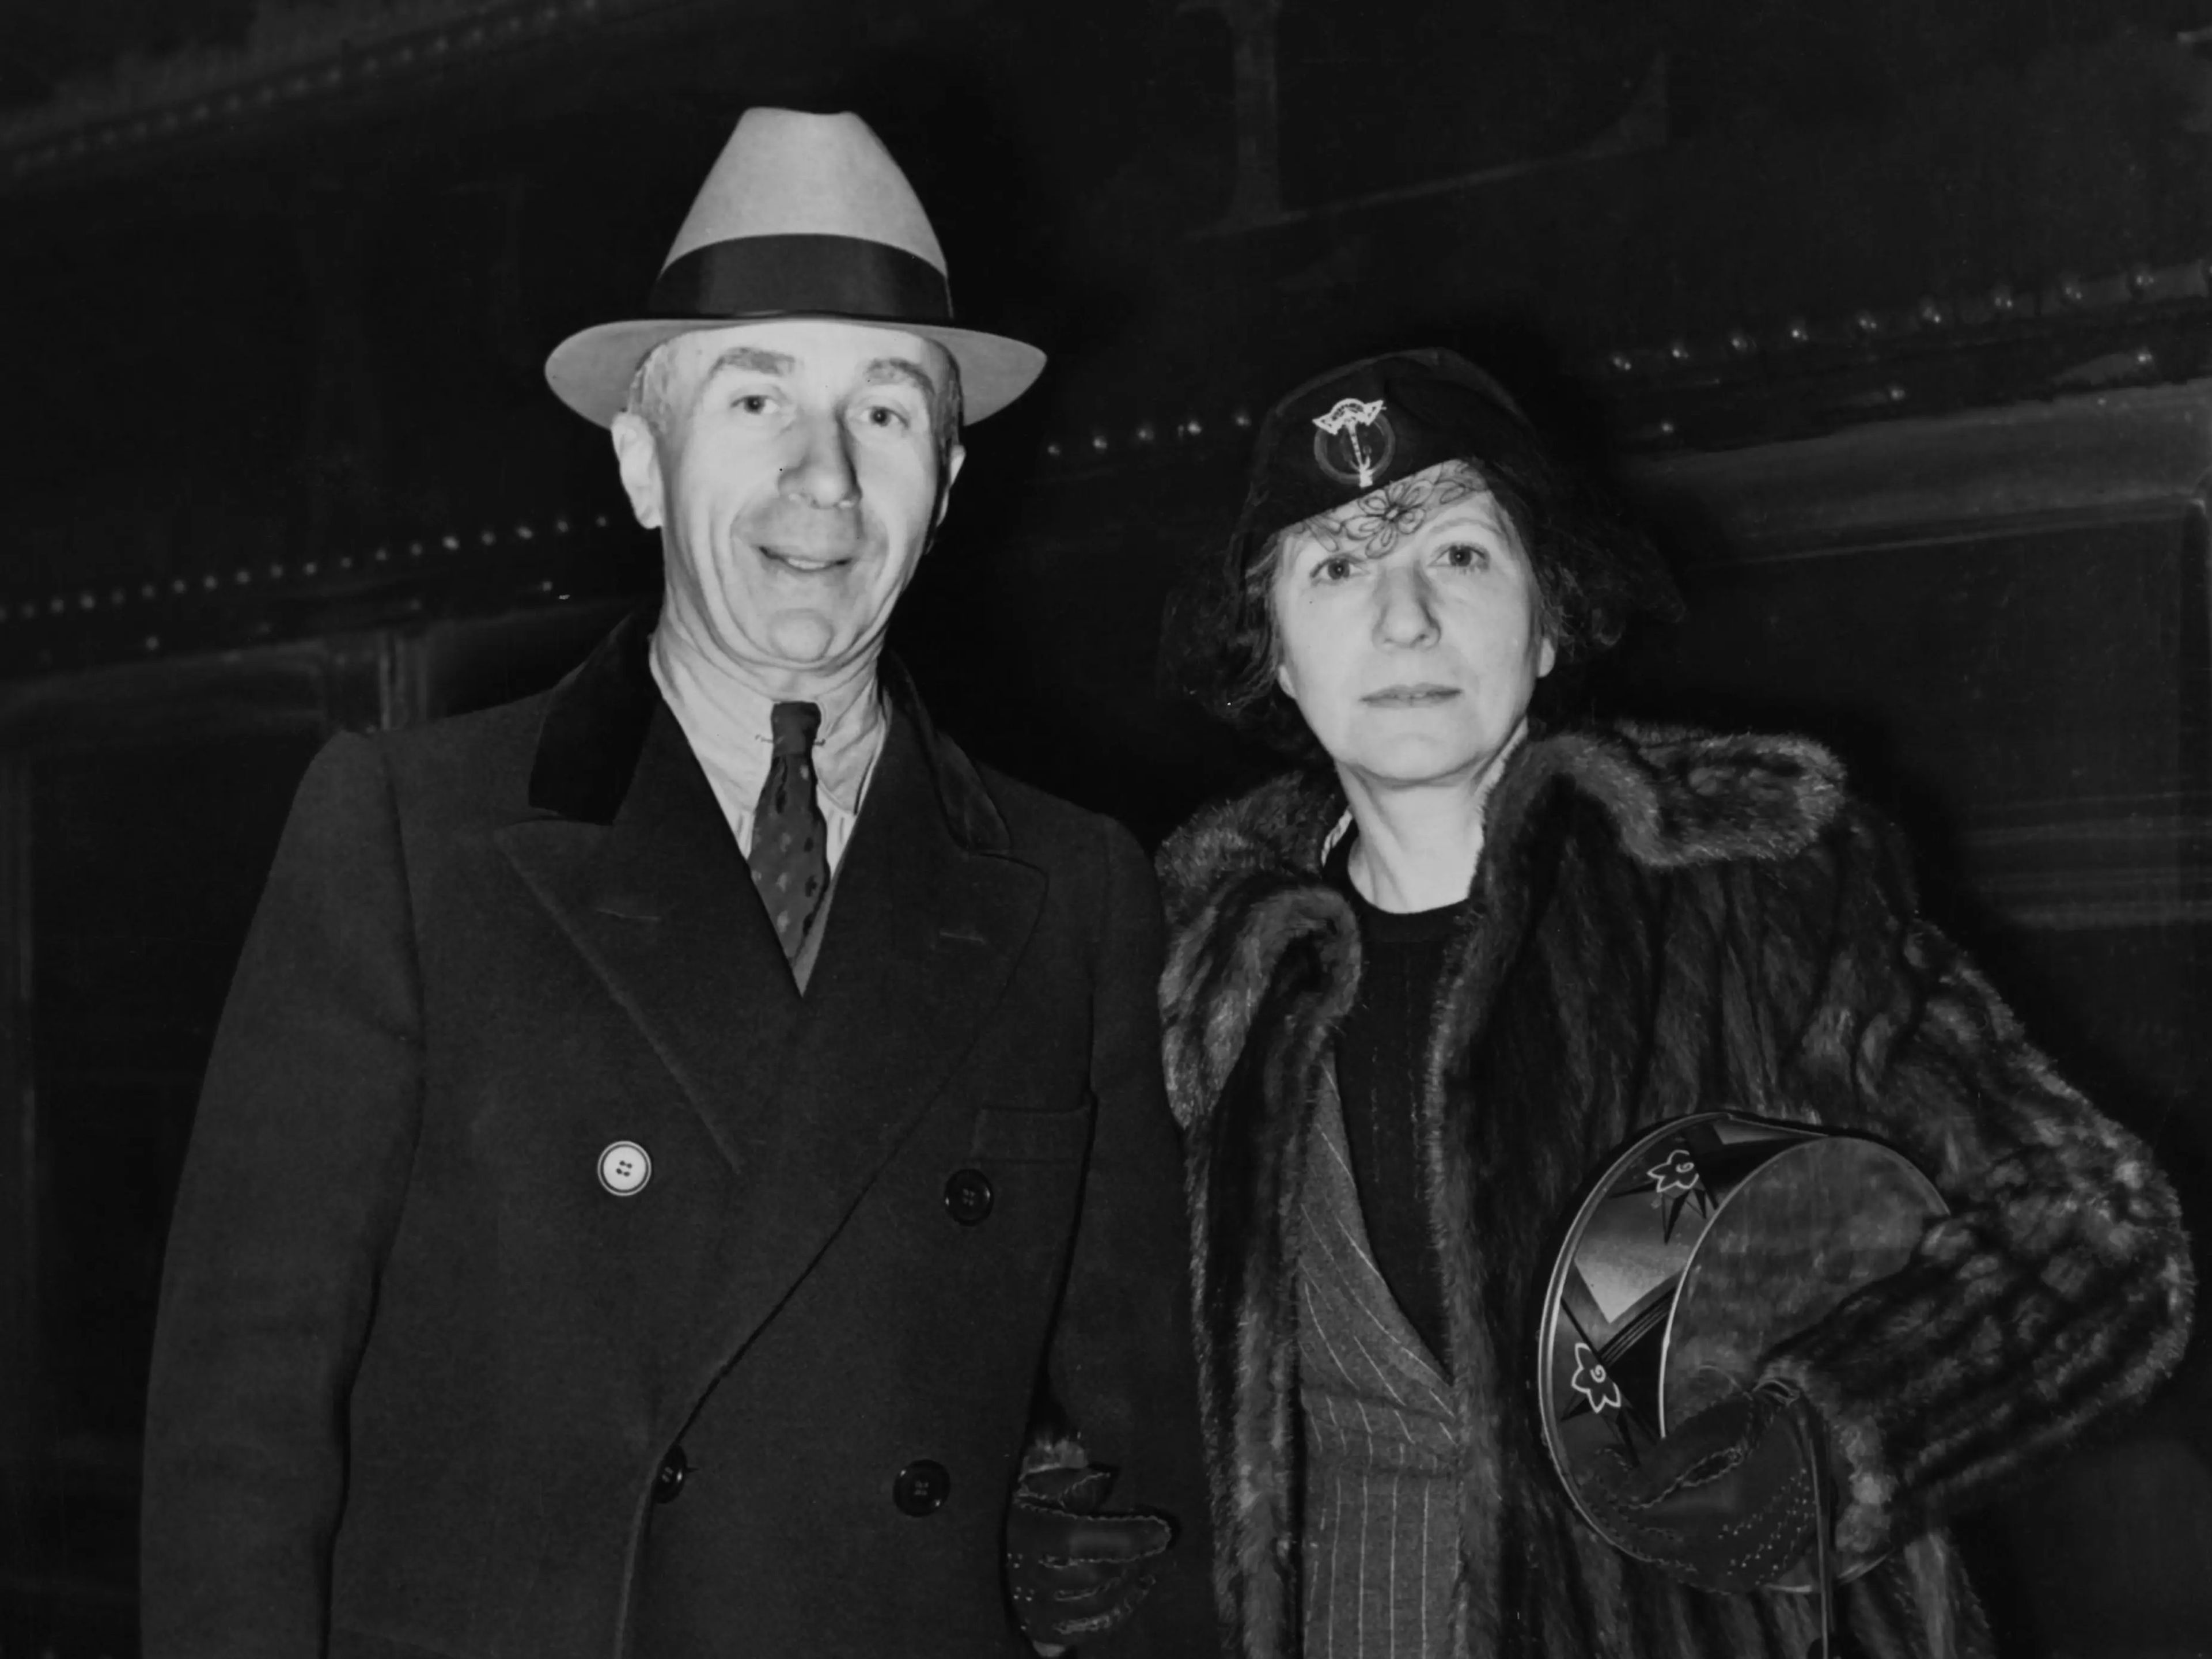 El productor cinematográfico estadounidense Harry Warner, presidente de Warner Bros. Pictures, Inc, y su esposa Rea llegan a Nueva York en el tren 20th Century Limited el 20 de enero de 1938.